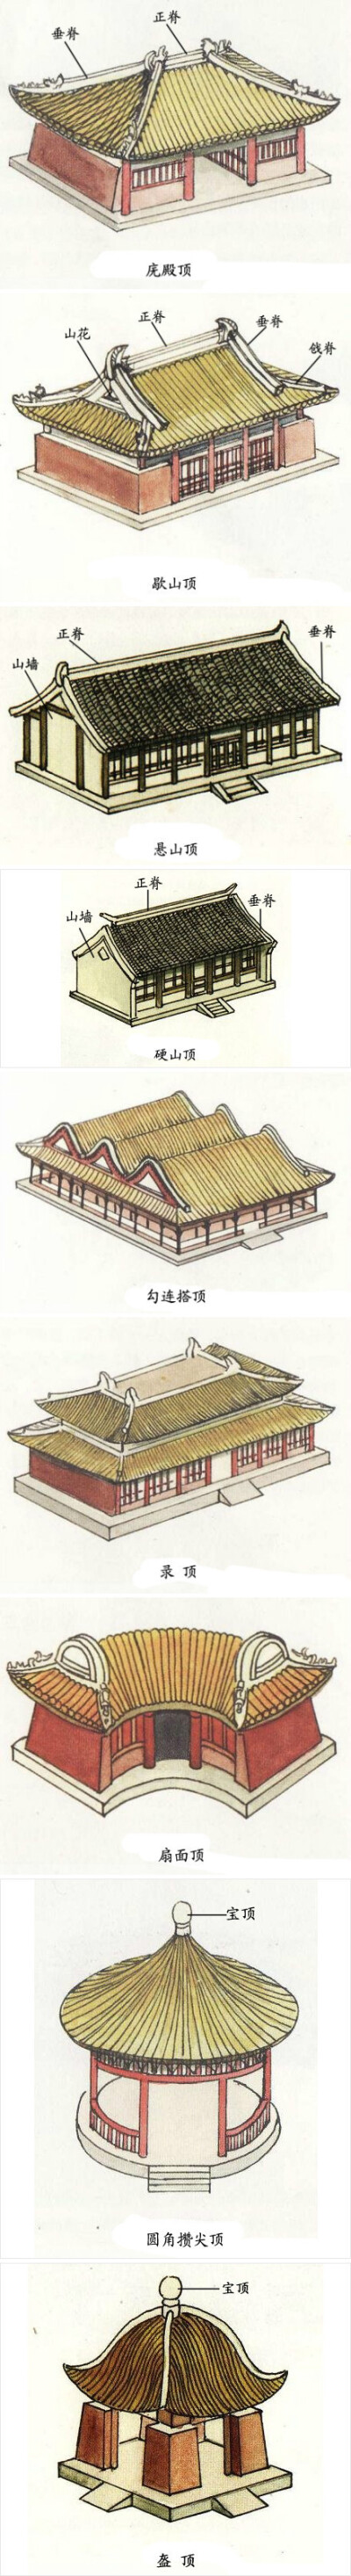 古代建筑屋顶形式图片